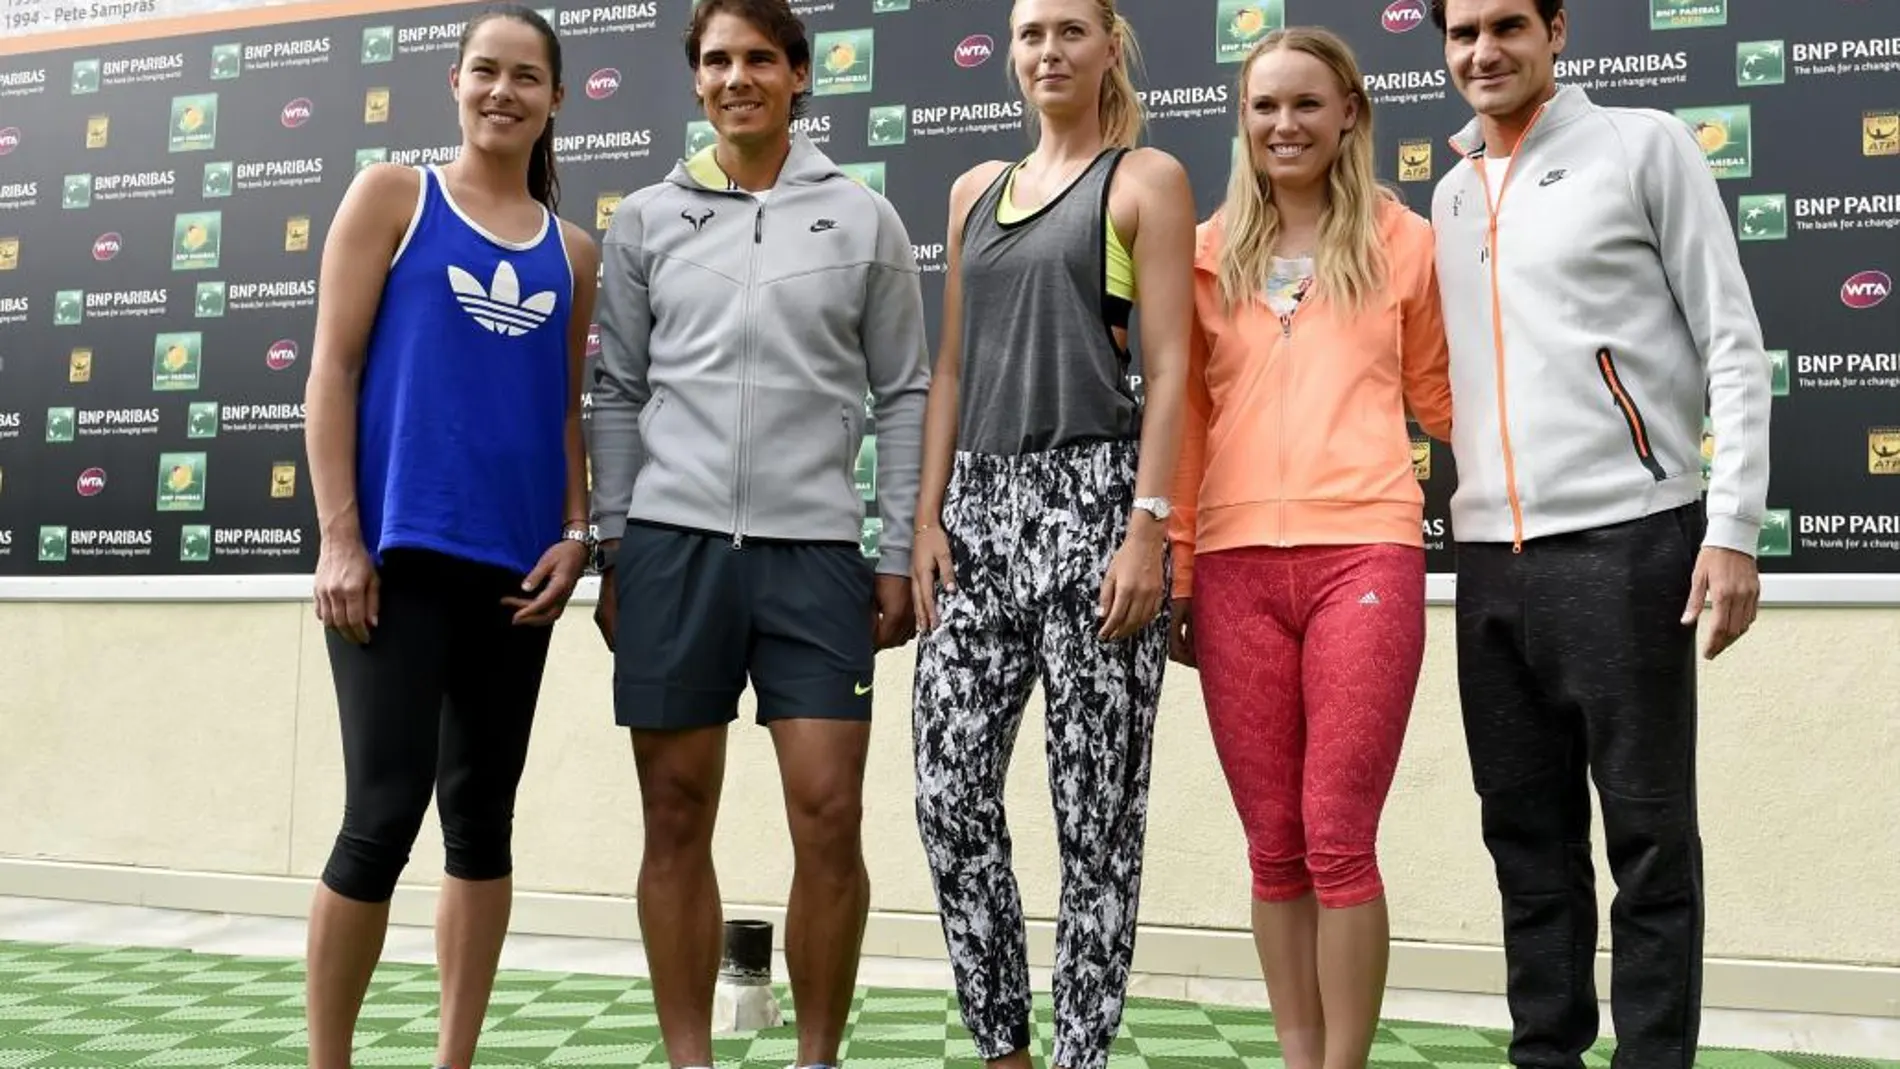 (i-d) Ana Ivanovic de Serbia, Rafael Nadal de España, Maria Sharapova de Rusia, Caroline Wozniacki de Dinamarca y Roger Federer de Suiza posan el miércoles pasado, durante una actividad con medios de comunicación en el Torneo de Indian Wells (CA, EE.UU.).